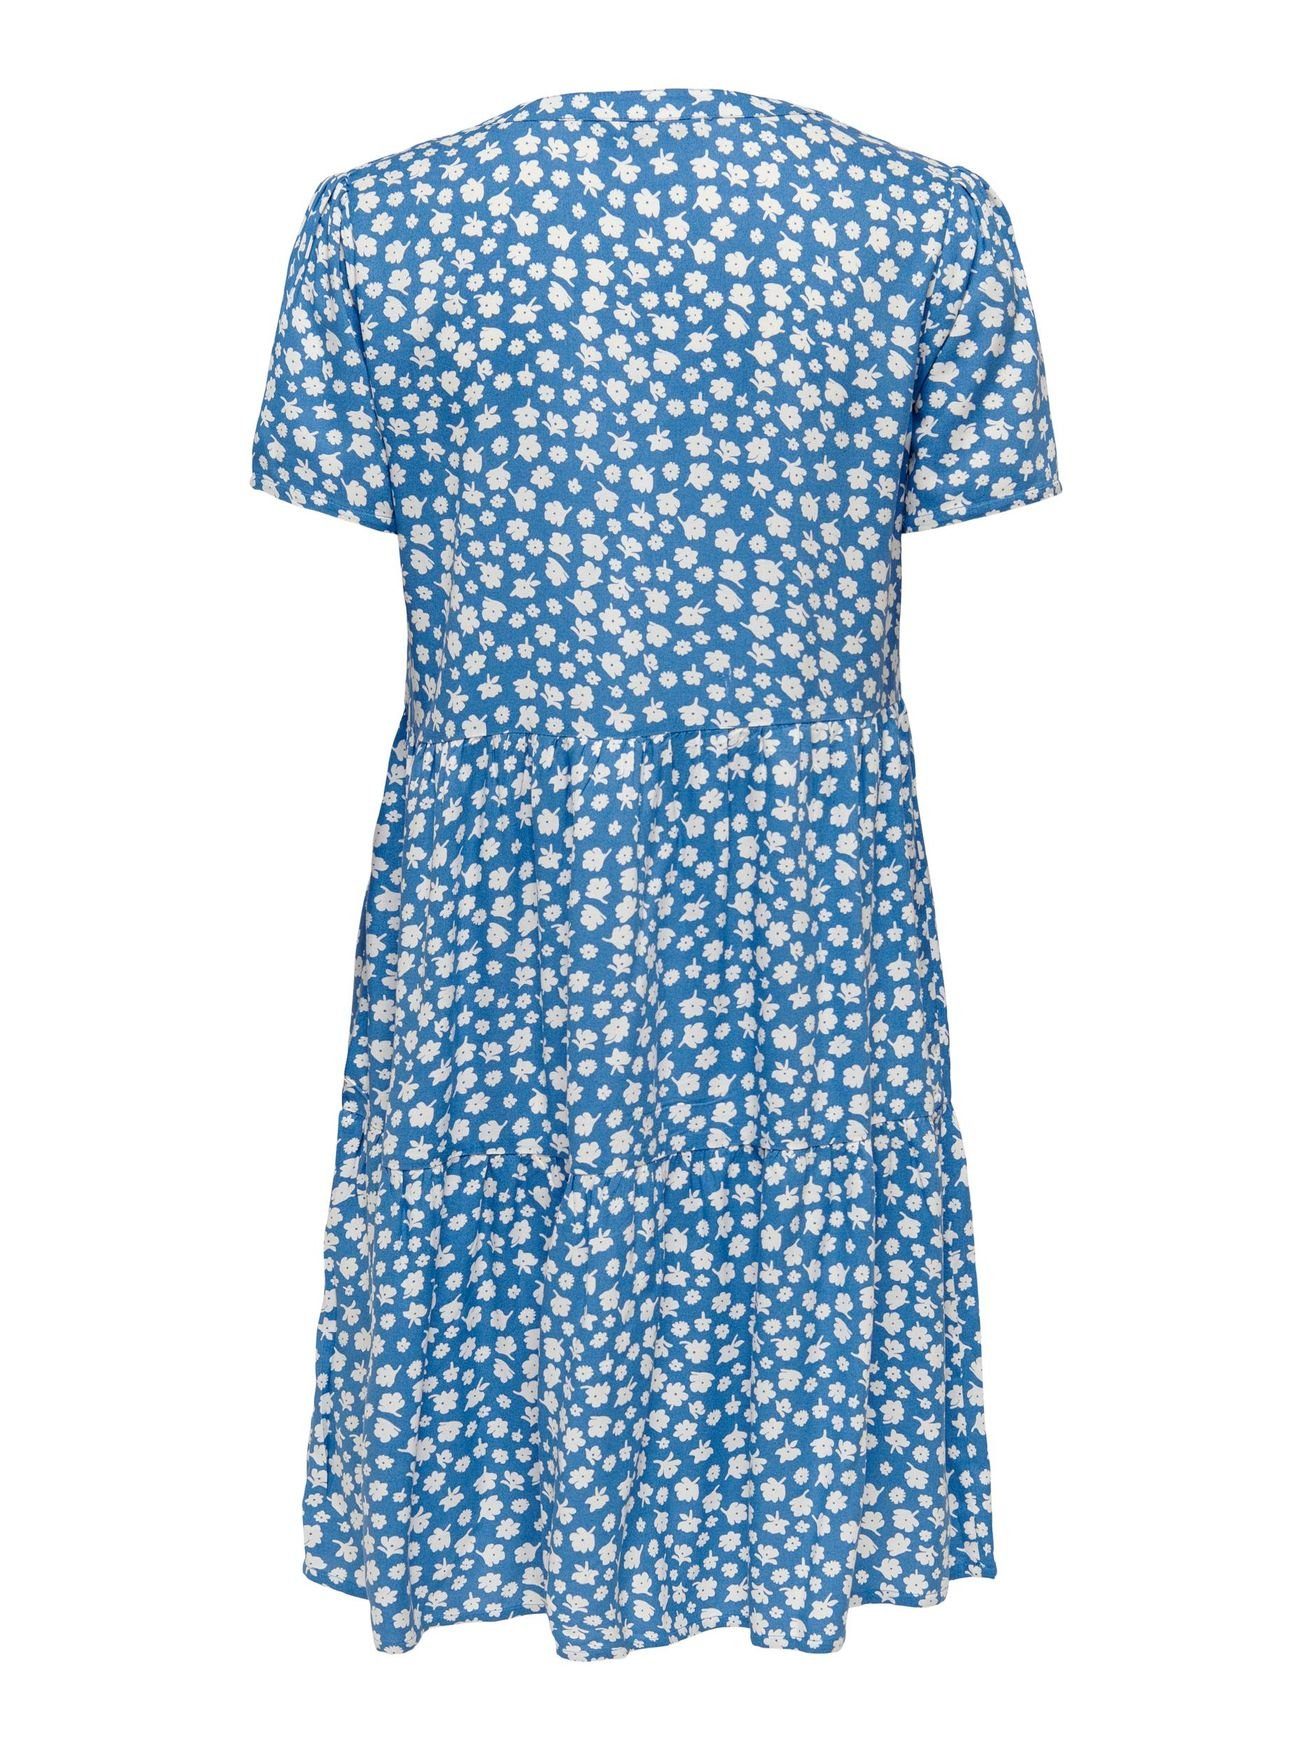 Blusen ONLZALLY Kleid 4928 Kurzes Shirtkleid ONLY V-Ausschnitt (knielang) Blau in